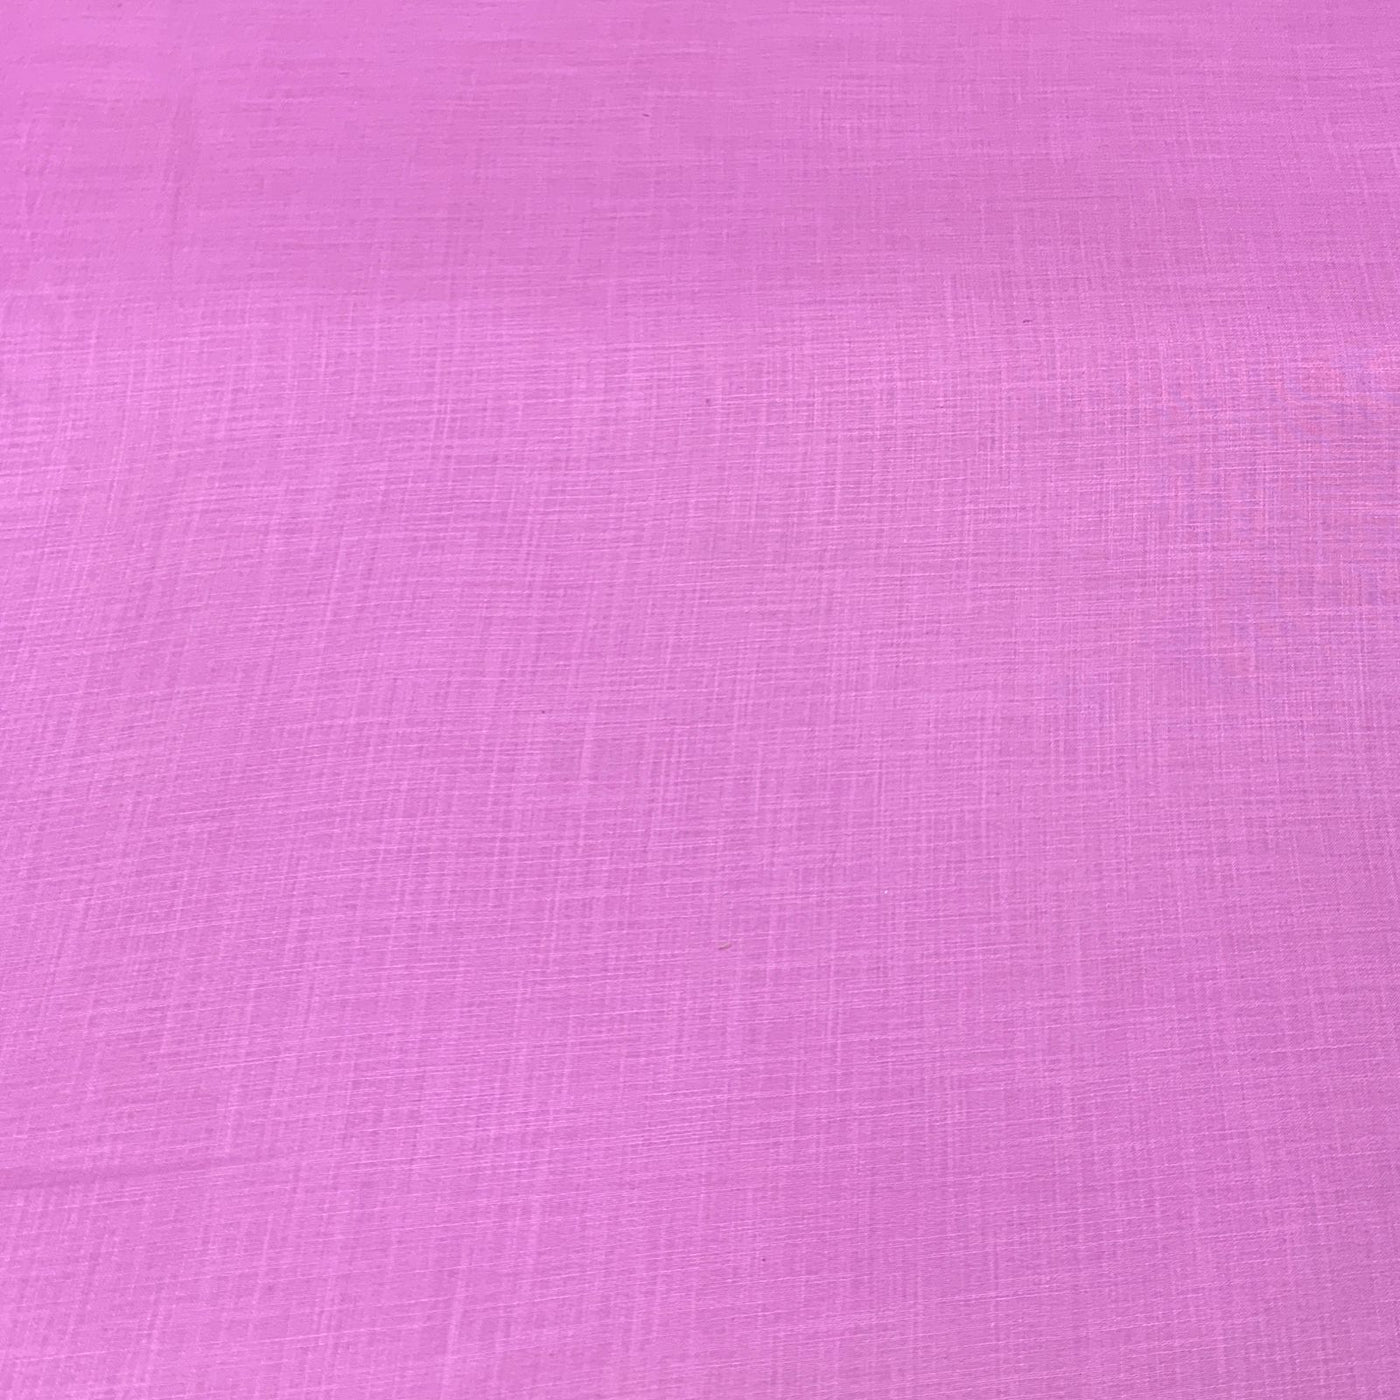 Onion Pink Plain Cotton Matka Fabric